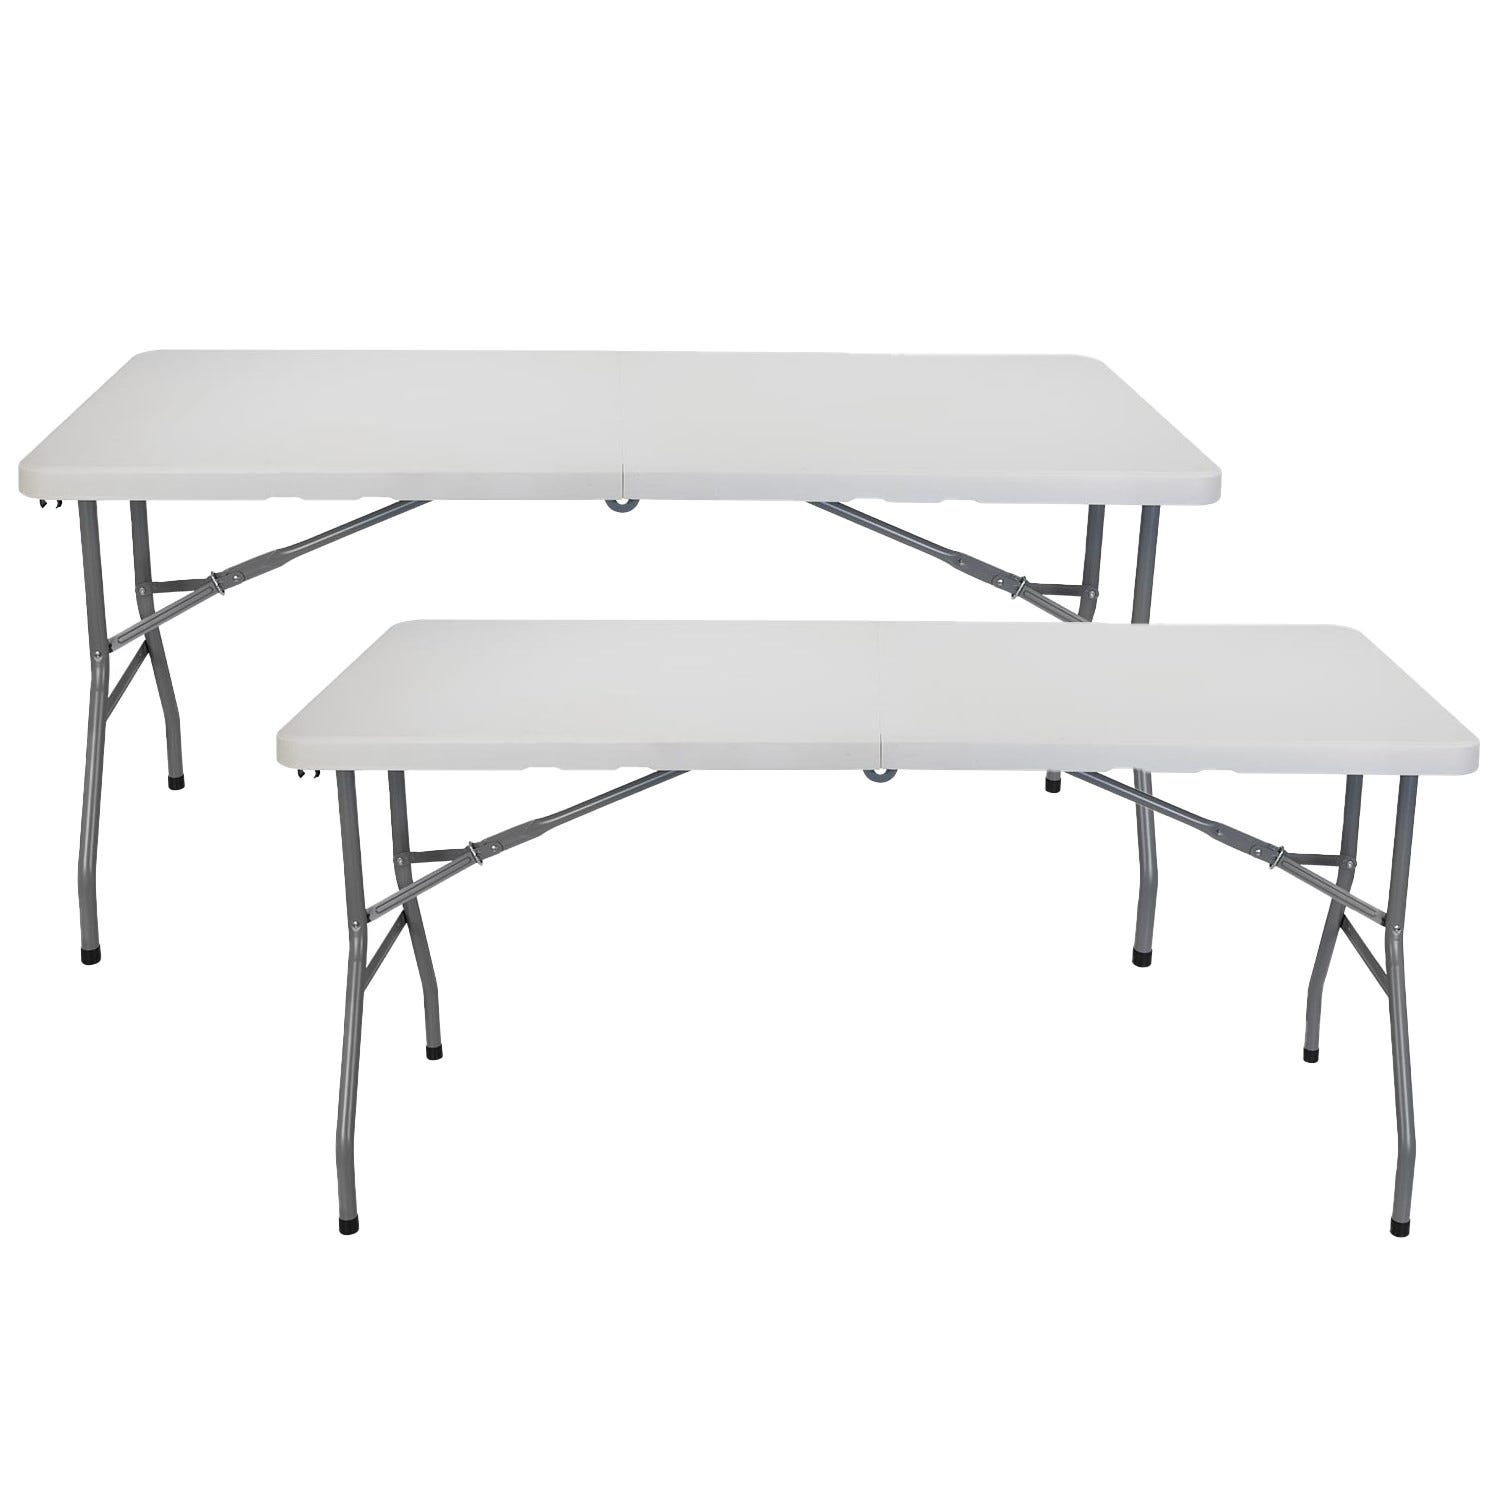 Confezione da 2 tavoli pieghevoli 150 cm rettangolari bianchi Catering  7house